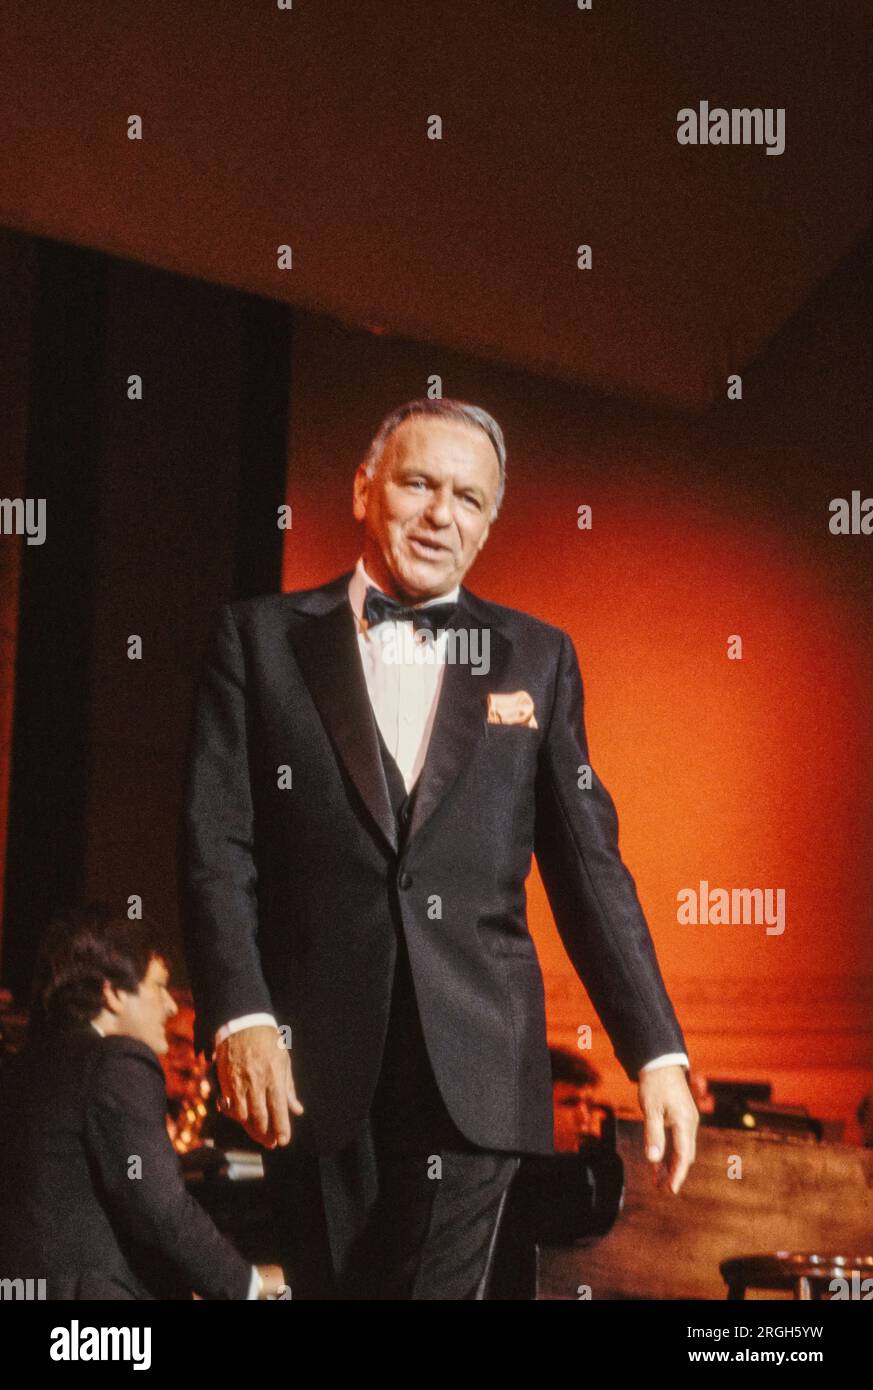 Frank Sinatra in Performance, 1982. Foto von Bernard Gotfryd . Francis Albert Sinatra war ein amerikanischer Sänger und Schauspieler. Er wird als einer der beliebtesten Entertainer der Mitte des 20. Jahrhunderts bezeichnet und später als „Ol“ Blue Eyes bezeichnet. Sinatra gehört mit einem geschätzten Umsatz von 150 Millionen Tonträgern zu den meistverkauften Musikkünstlern der Welt. Sinatra wurde von italienischen Einwanderern in Hoboken, New Jersey, geboren und begann seine musikalische Karriere in der Swing-Ära . Stockfoto